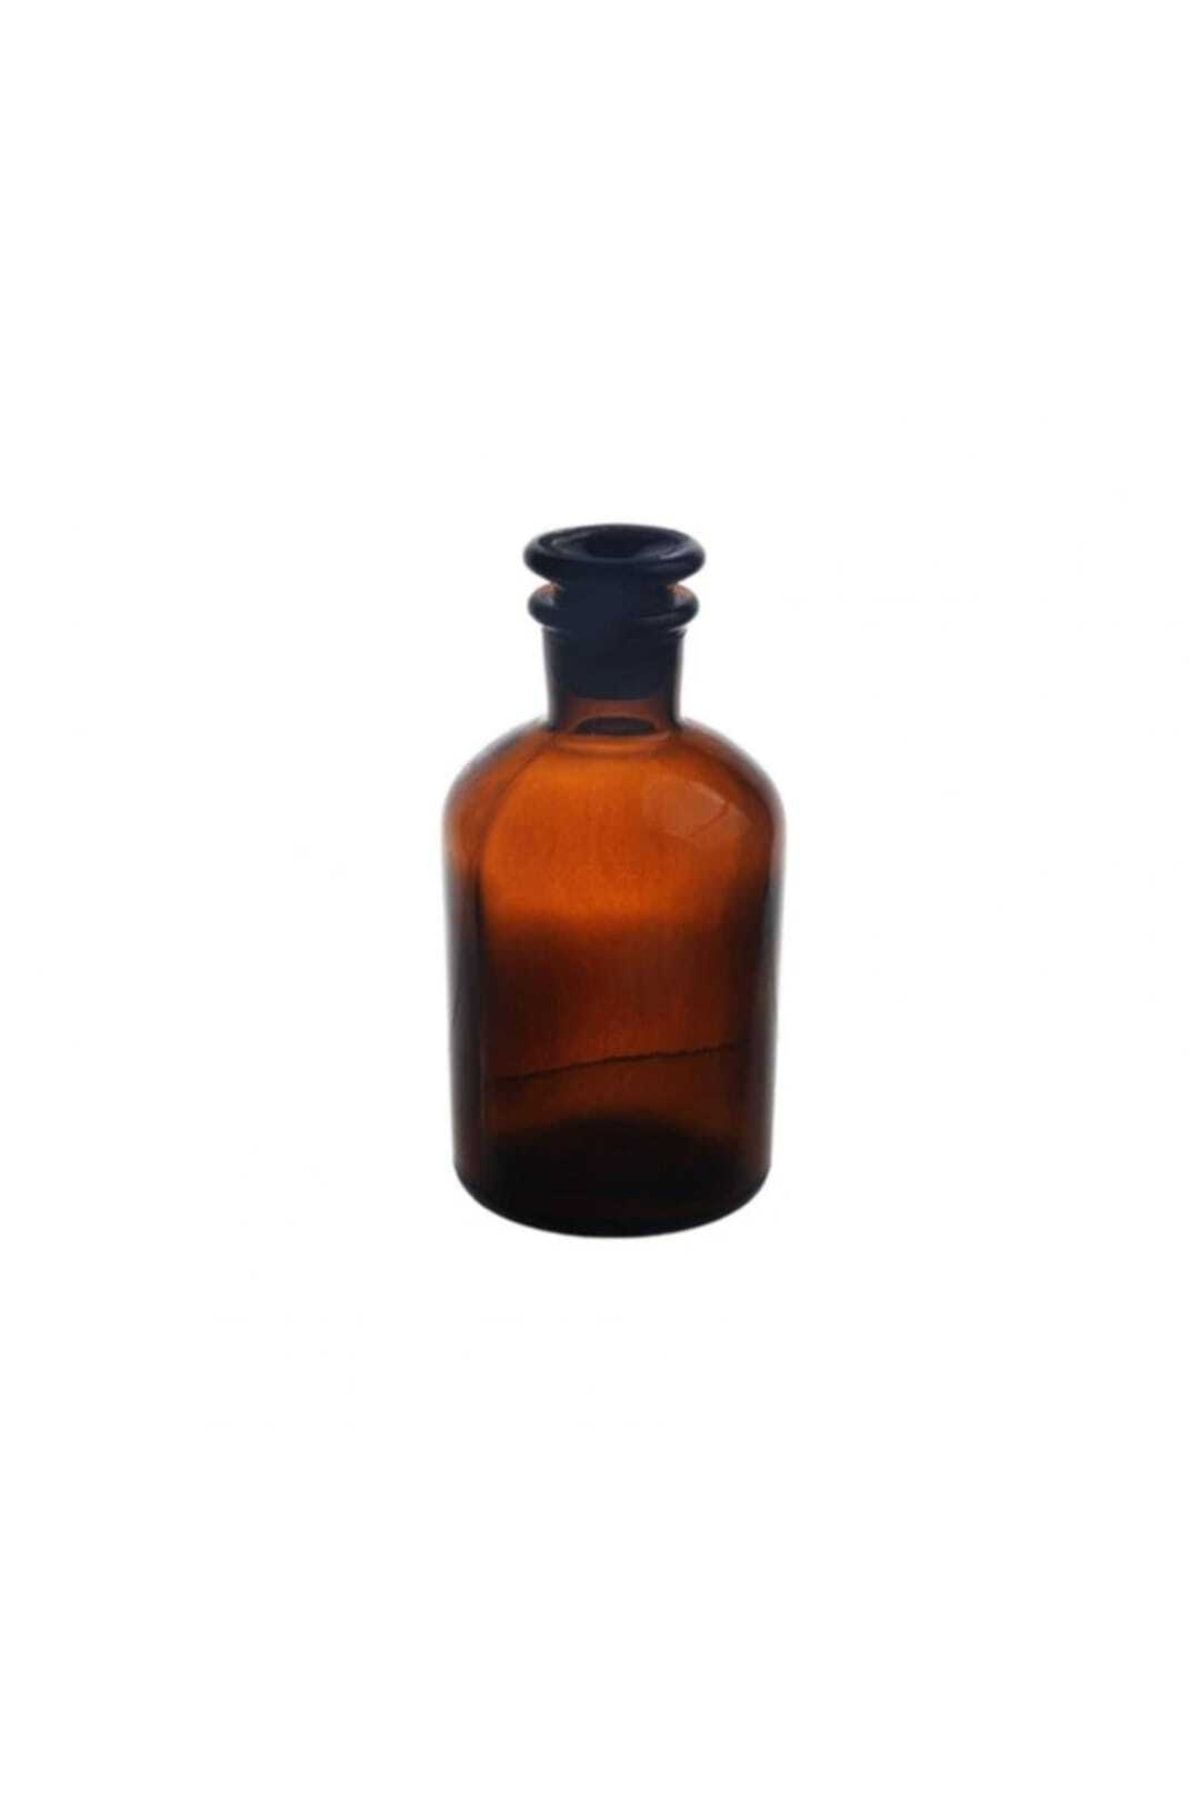 ZAG KİMYA Likit Şişesi Cam Kapaklı Amber 250 ml - 1 Adet